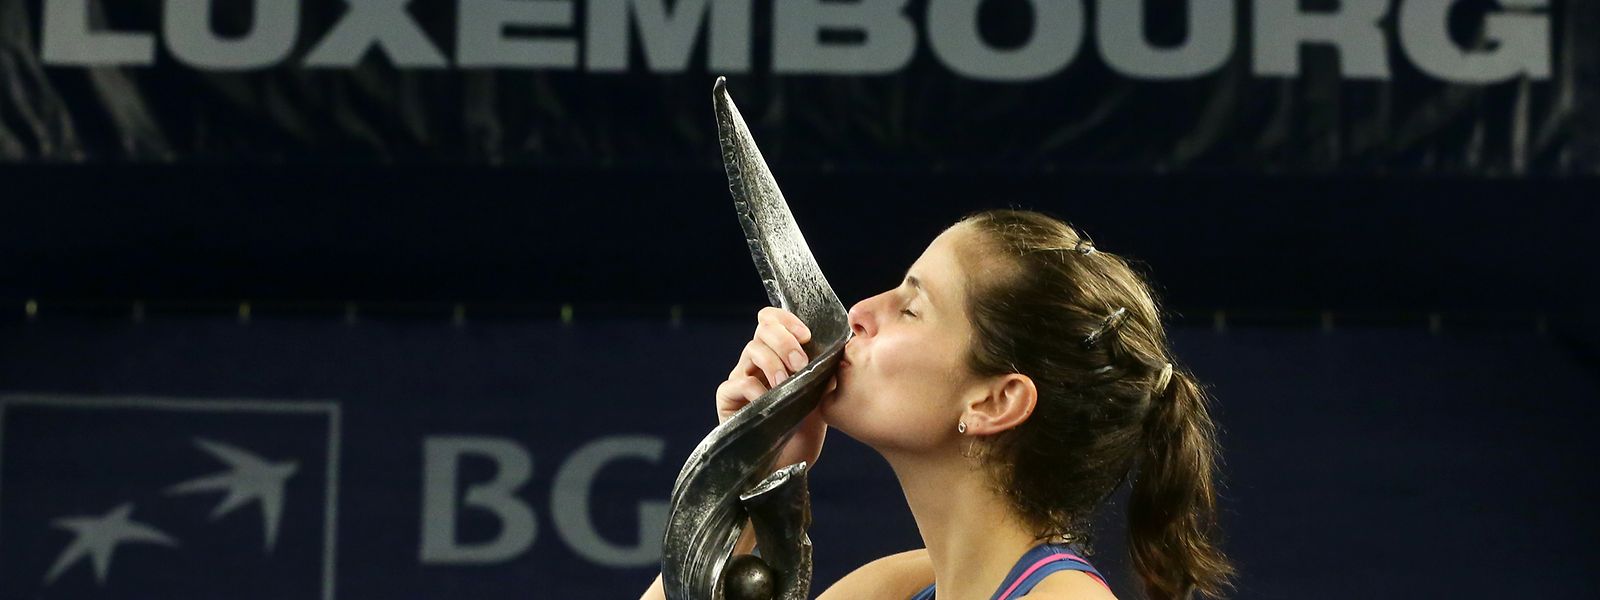 Julia Görges konnte sich 2018 in die Siegerliste des WTA-Turniers in Luxemburg eintragen.